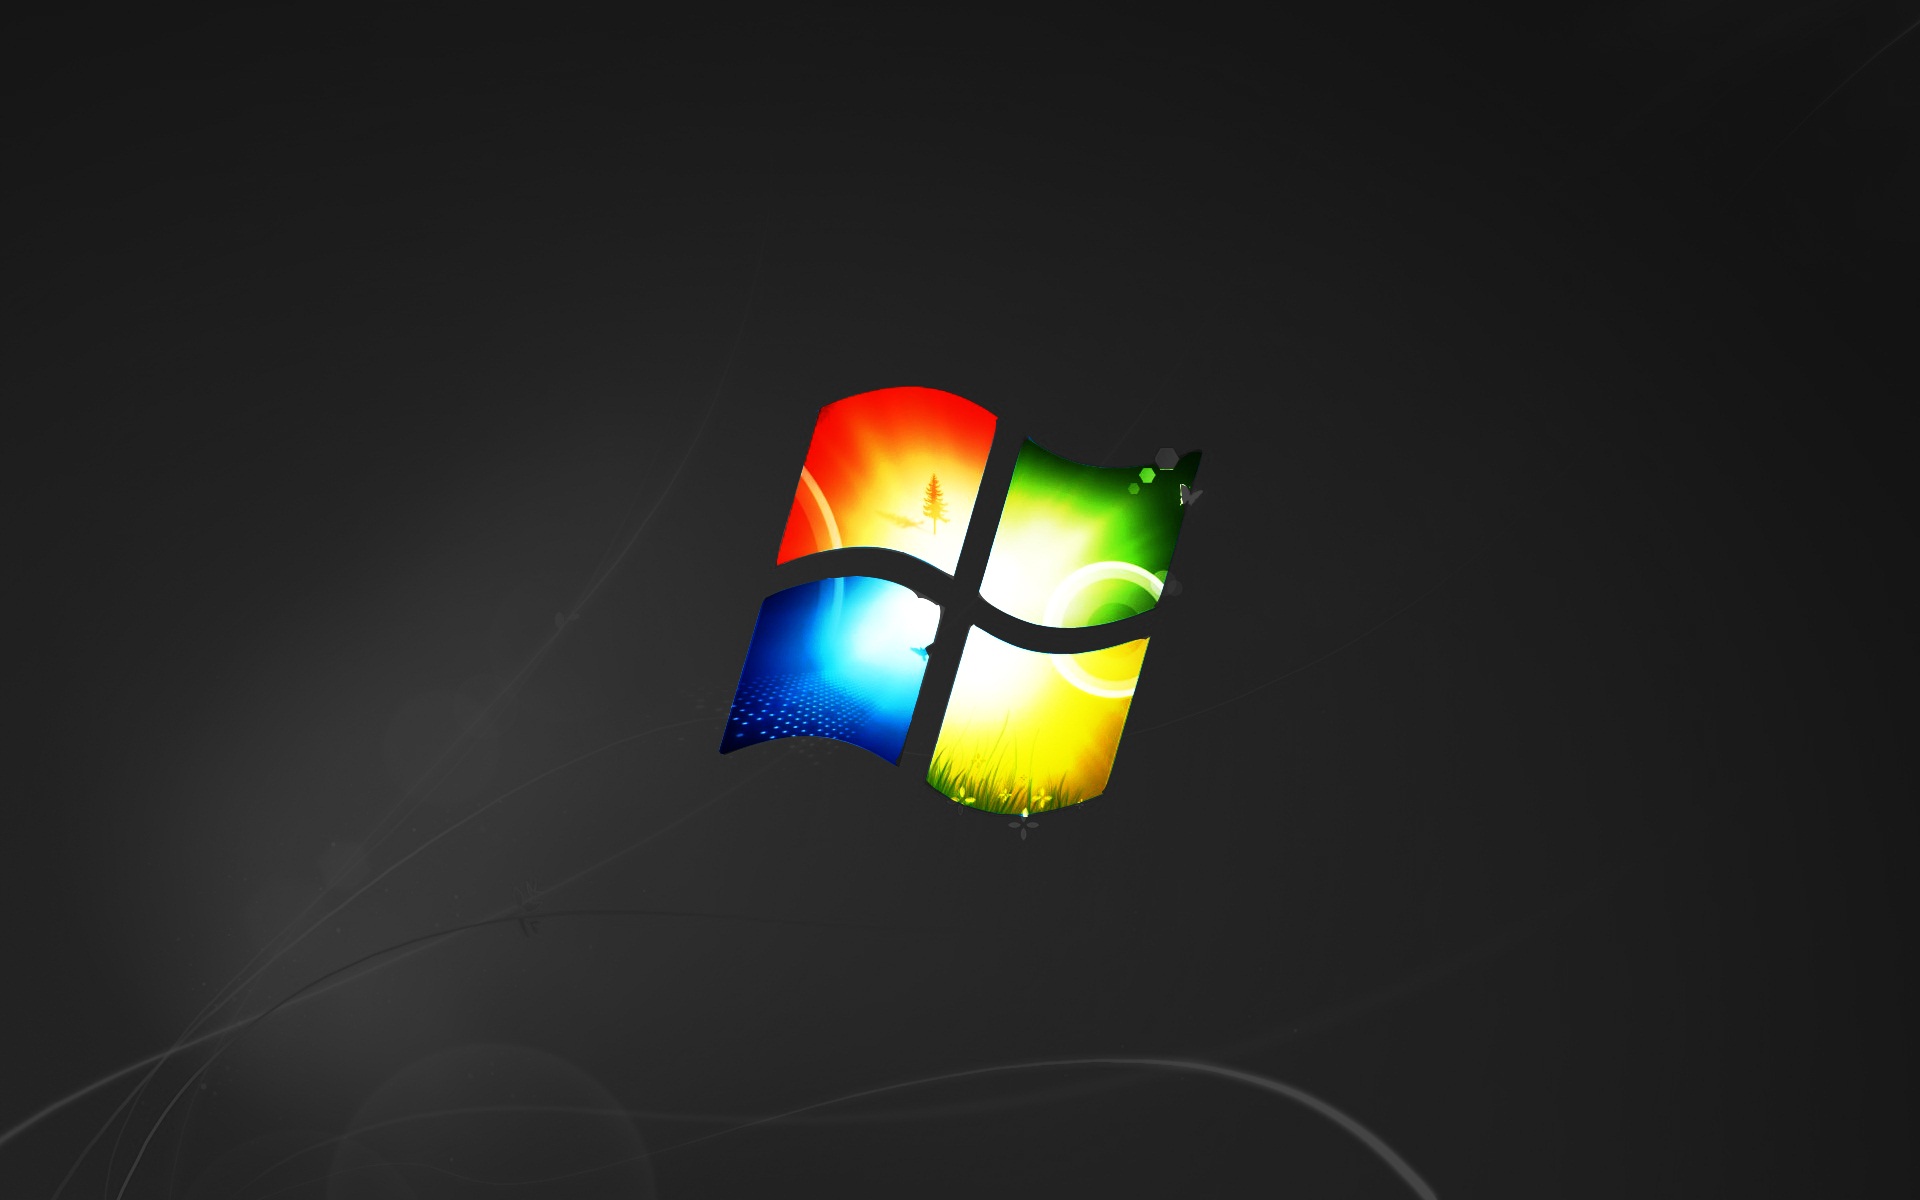 Hình nền là những điểm nhấn quan trọng trong việc tạo ra không gian làm việc trên máy tính của bạn. Với Windows 7, bạn có thể chọn những bức hình nền tuyệt vời để tạo ra một không gian làm việc hoàn hảo. Hãy truy cập ngay để khám phá sự đa dạng và đẹp mắt của các hình nền Windows